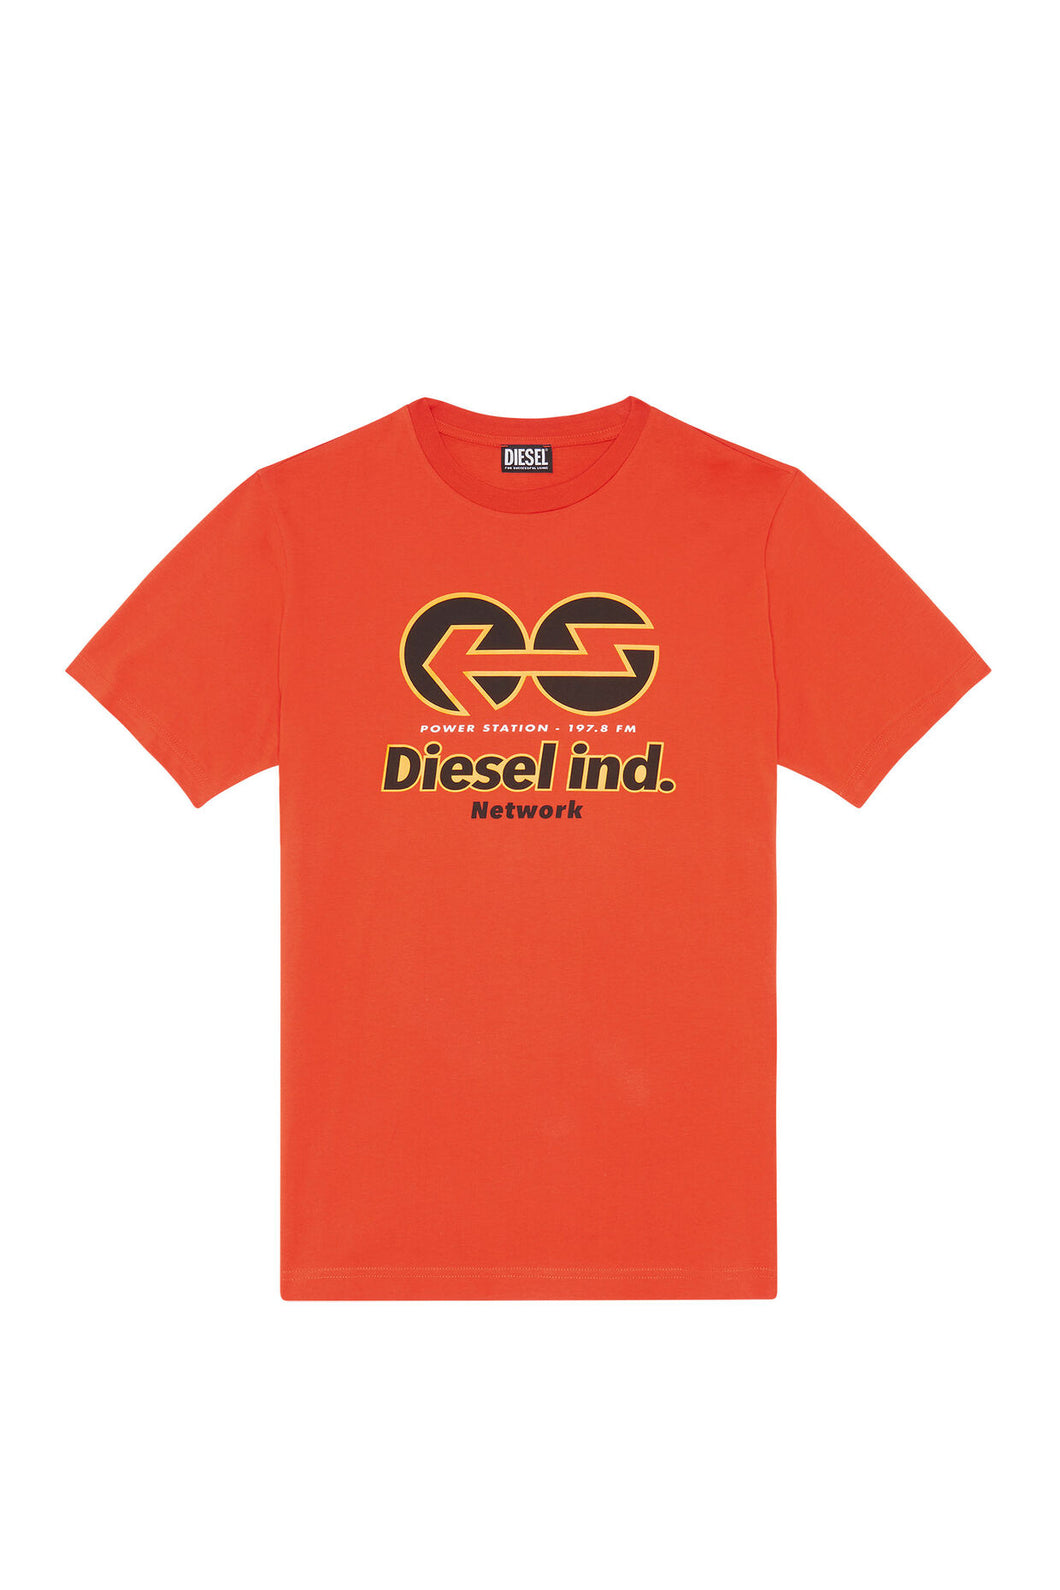 T-shirt Diesel Network orange